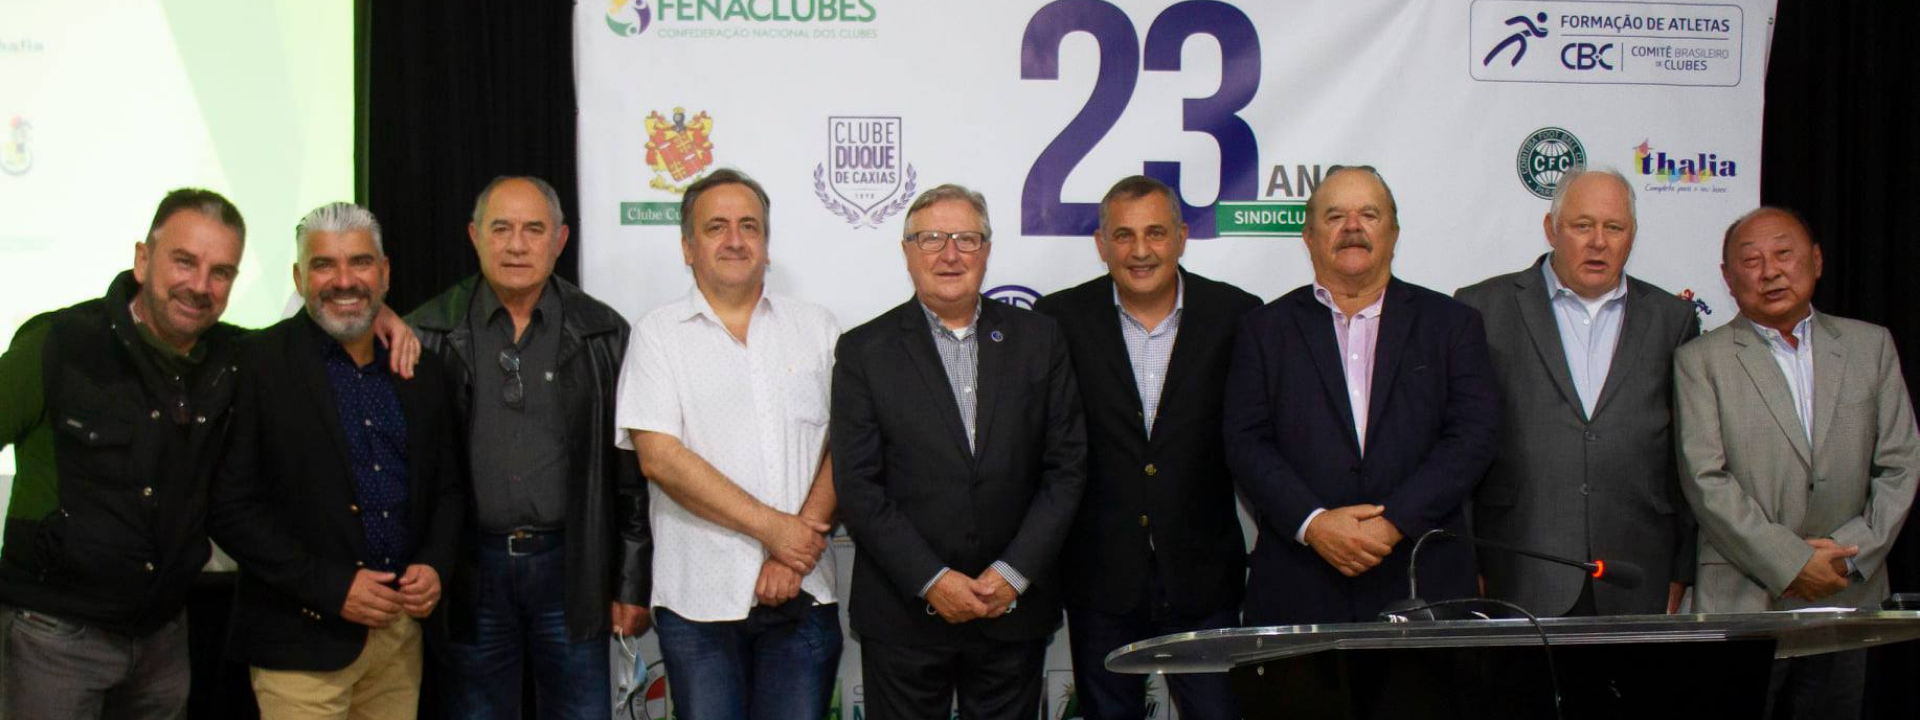 Sindiclubes-PR comemora 23 anos em evento e homenageia o Comitê Brasileiro de Clubes (CBC) e a Federação Nacional de Clubes (FENACLUBES)